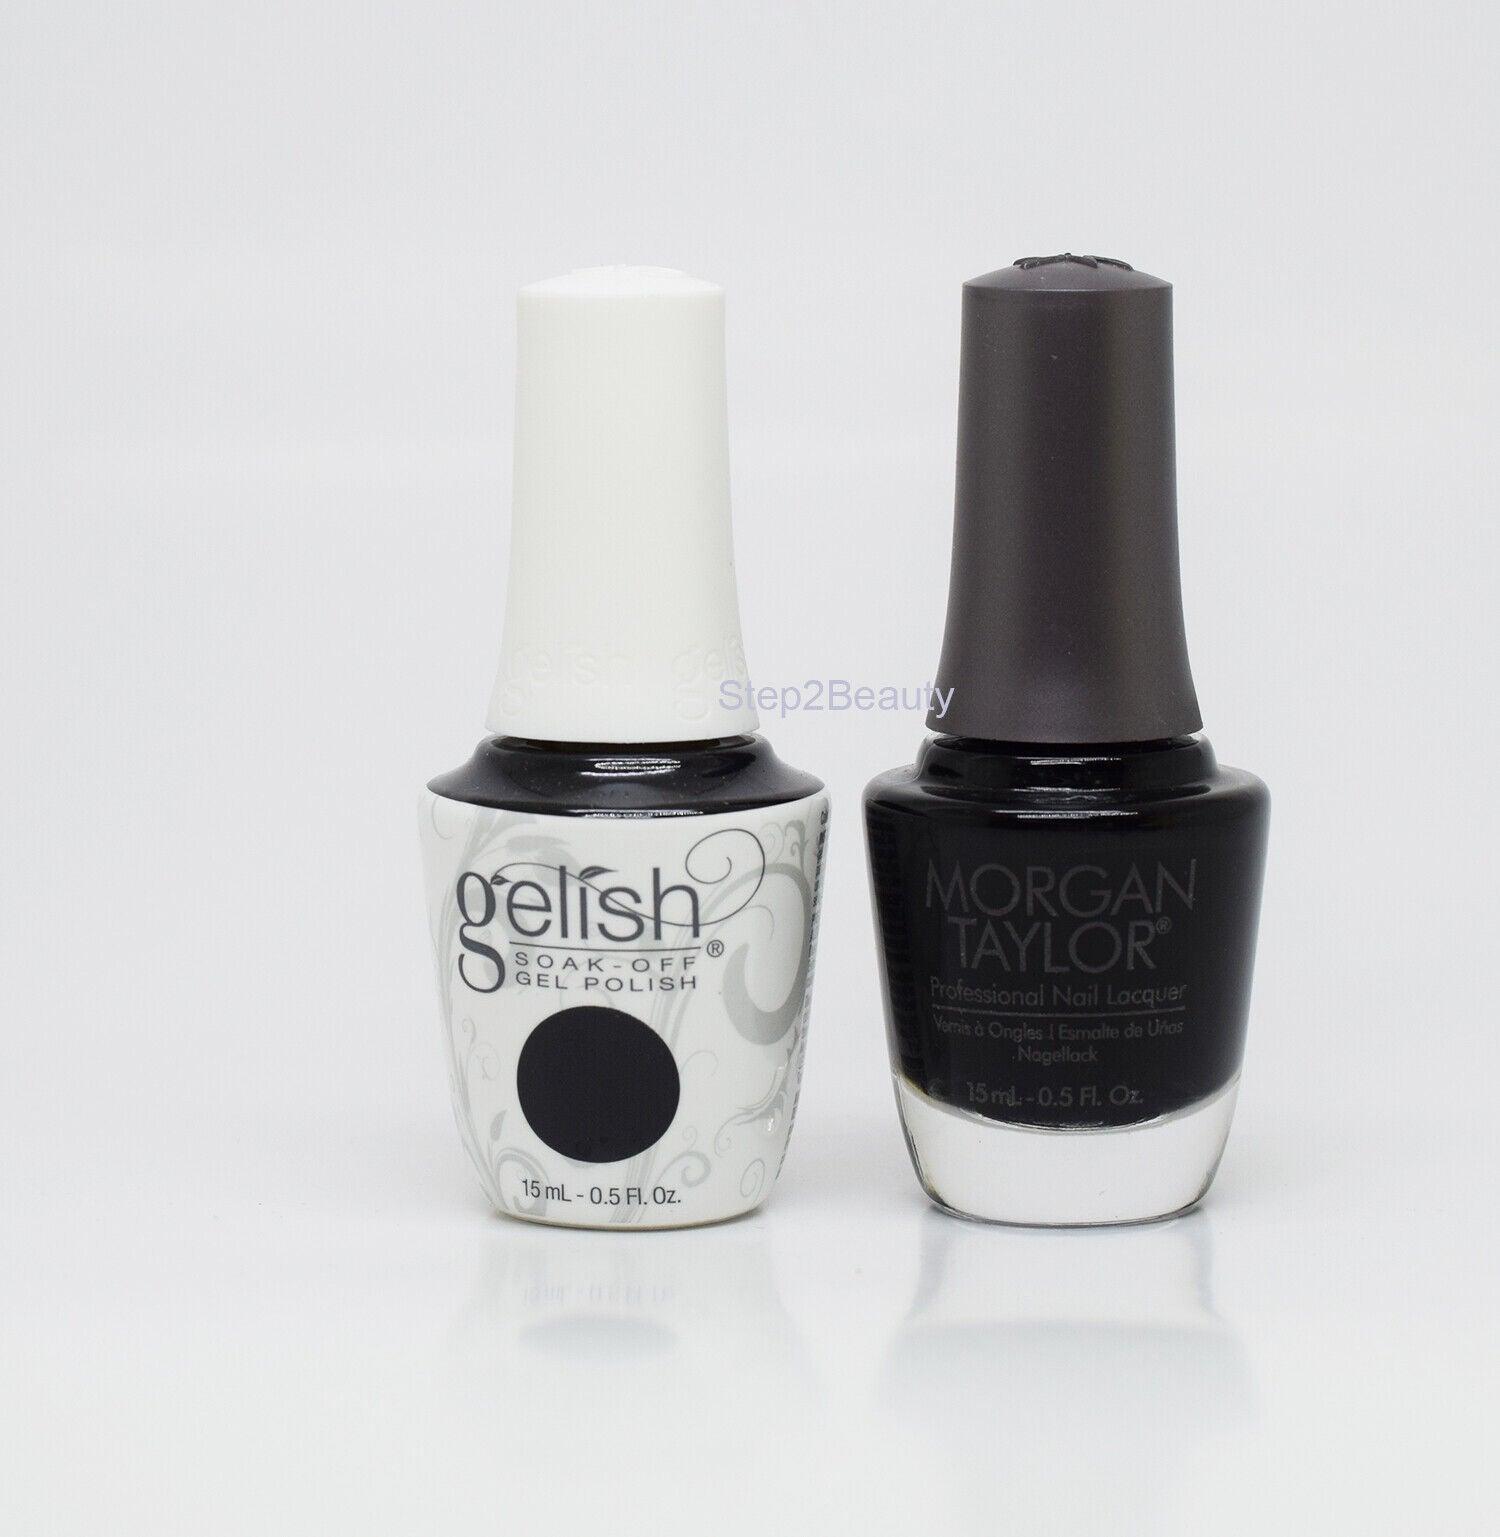 Gelish DUO Soak Off Gel Polish + Morgan Taylor Lacquer - #830 Black Shadow